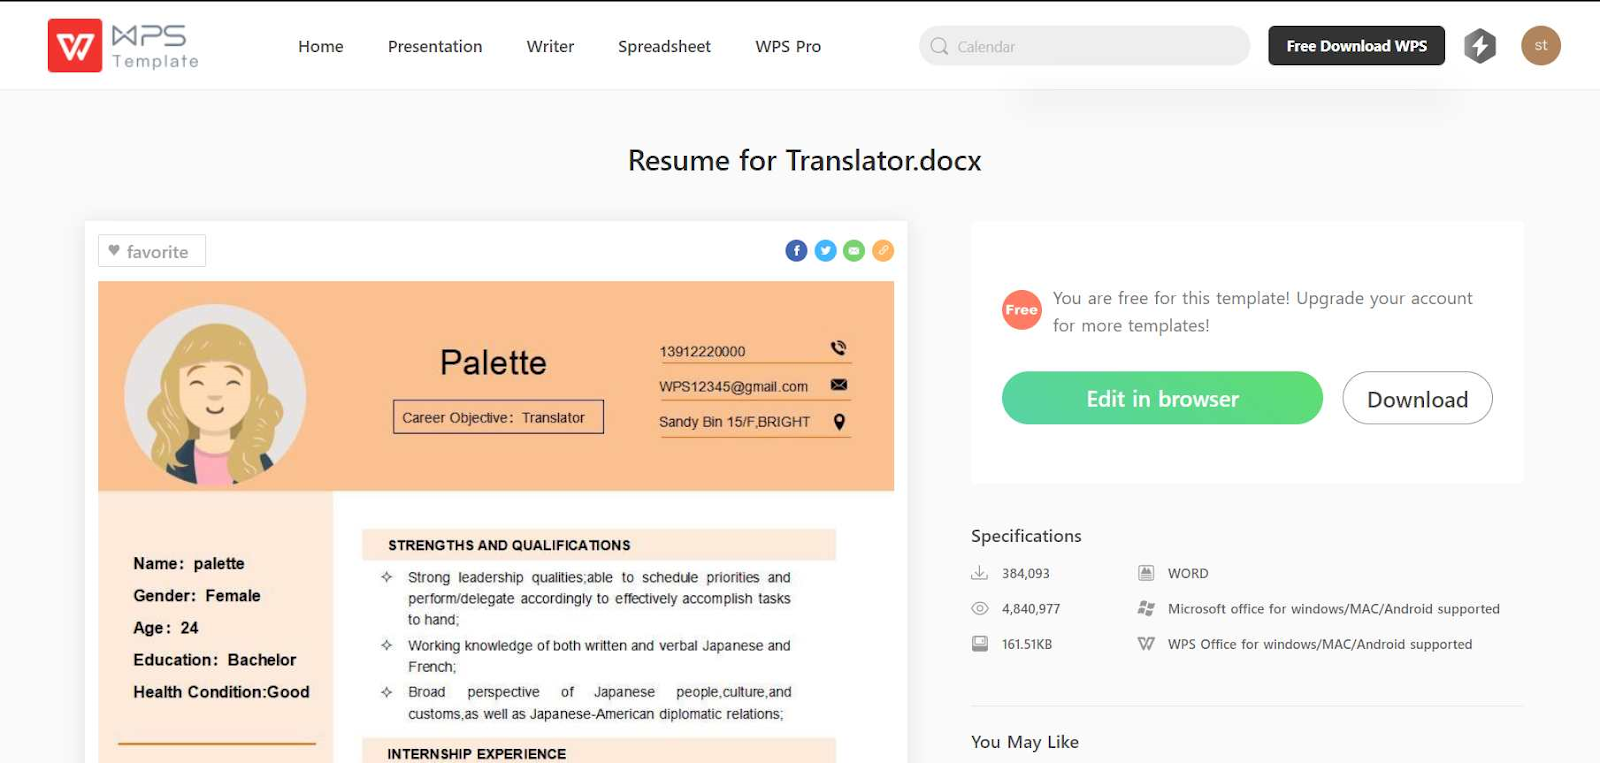 Resume for Translator